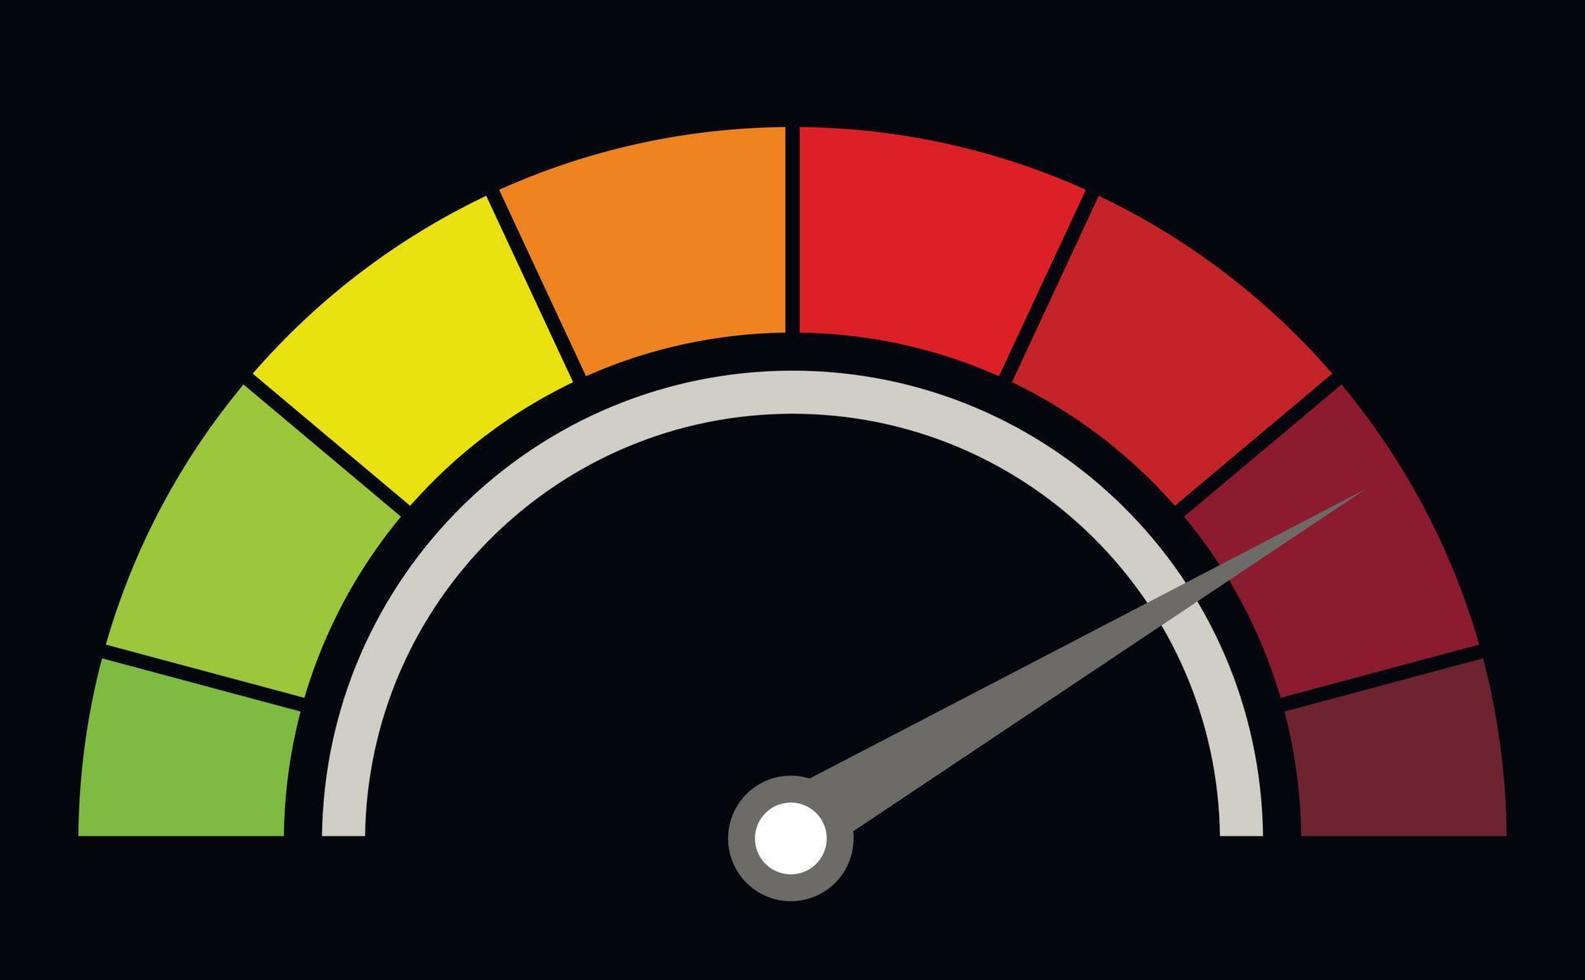 manómetro o indicador de medición. icono de velocímetro con escala roja, amarilla, verde y flecha. gráfico de progreso de rendimiento. indicador de riesgo y tensión. fondo negro. vector